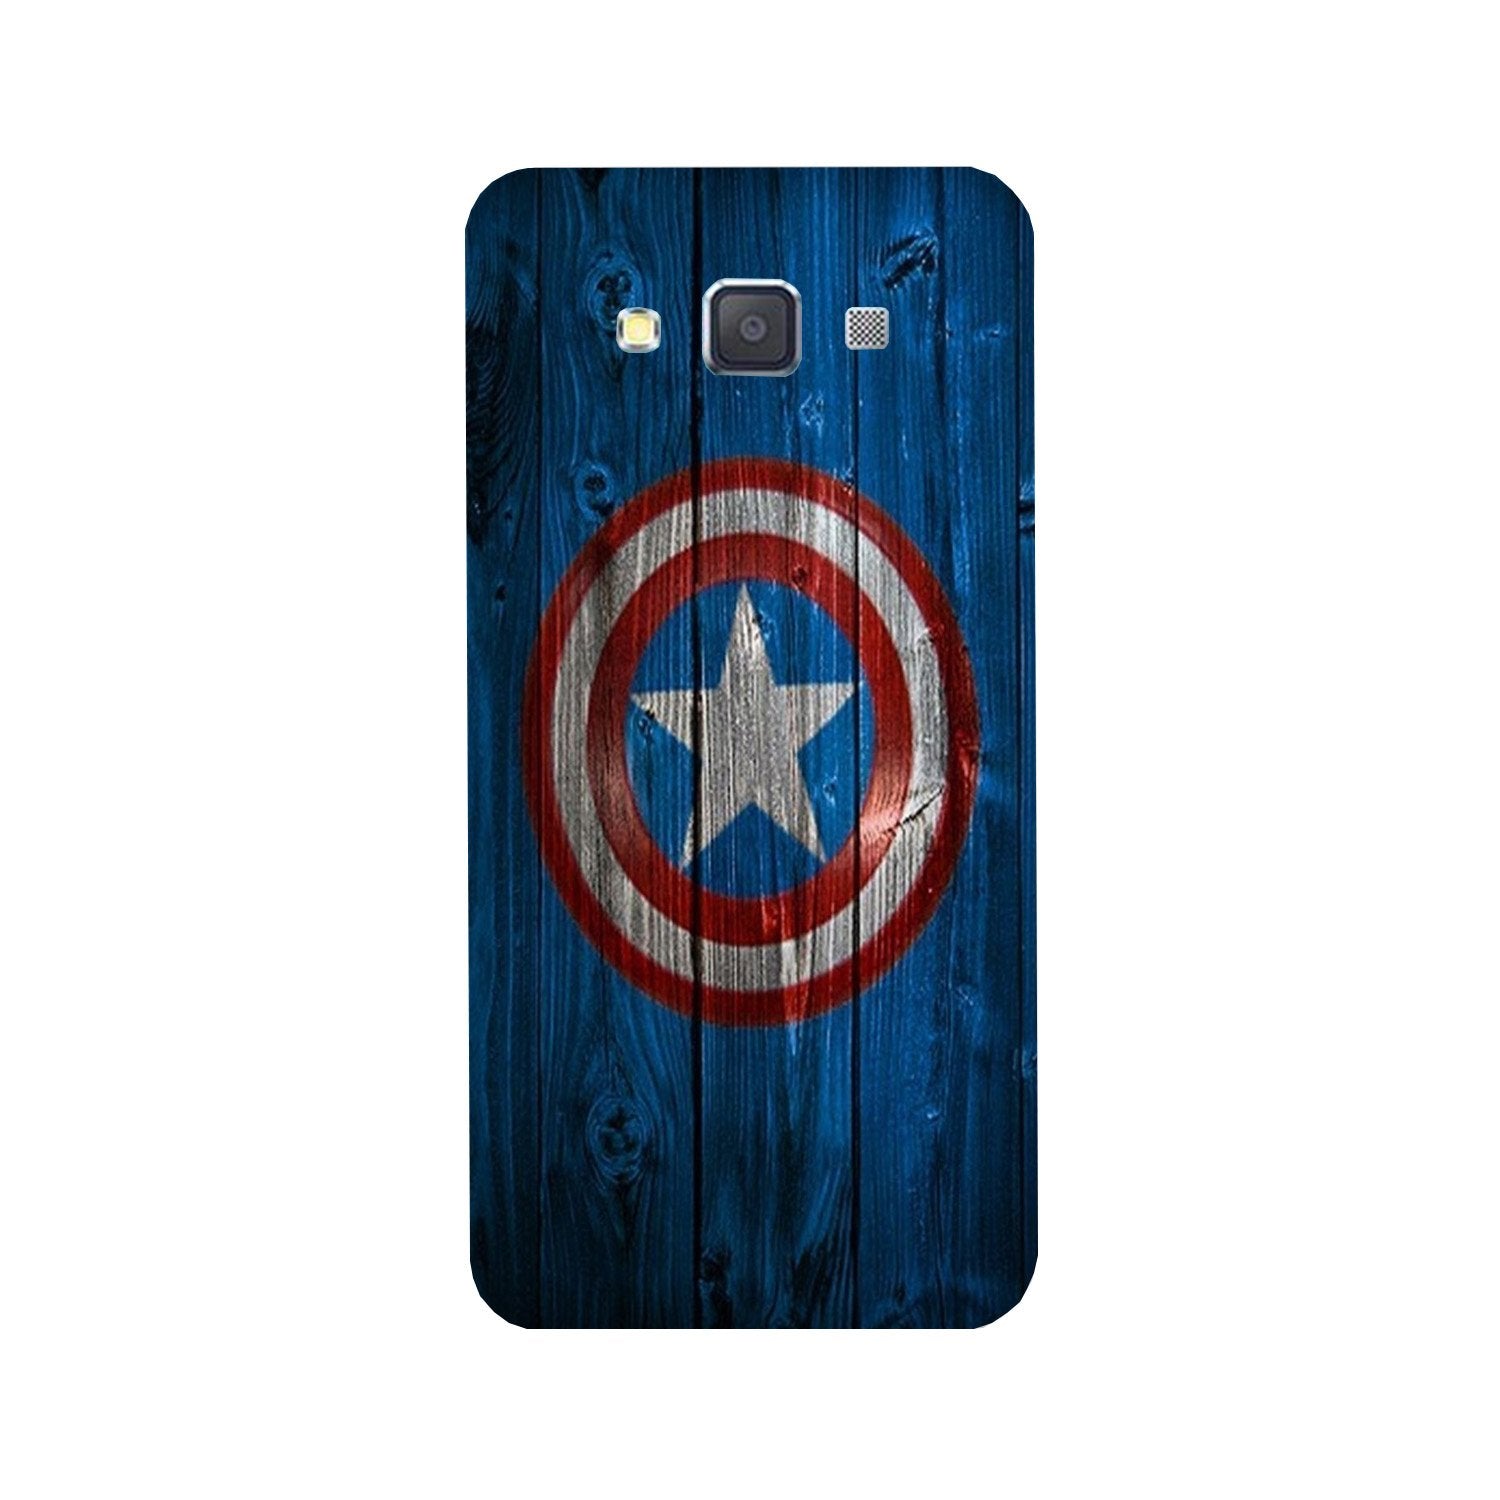 Captain America Superhero Case for Galaxy Grand Max(Design - 118)